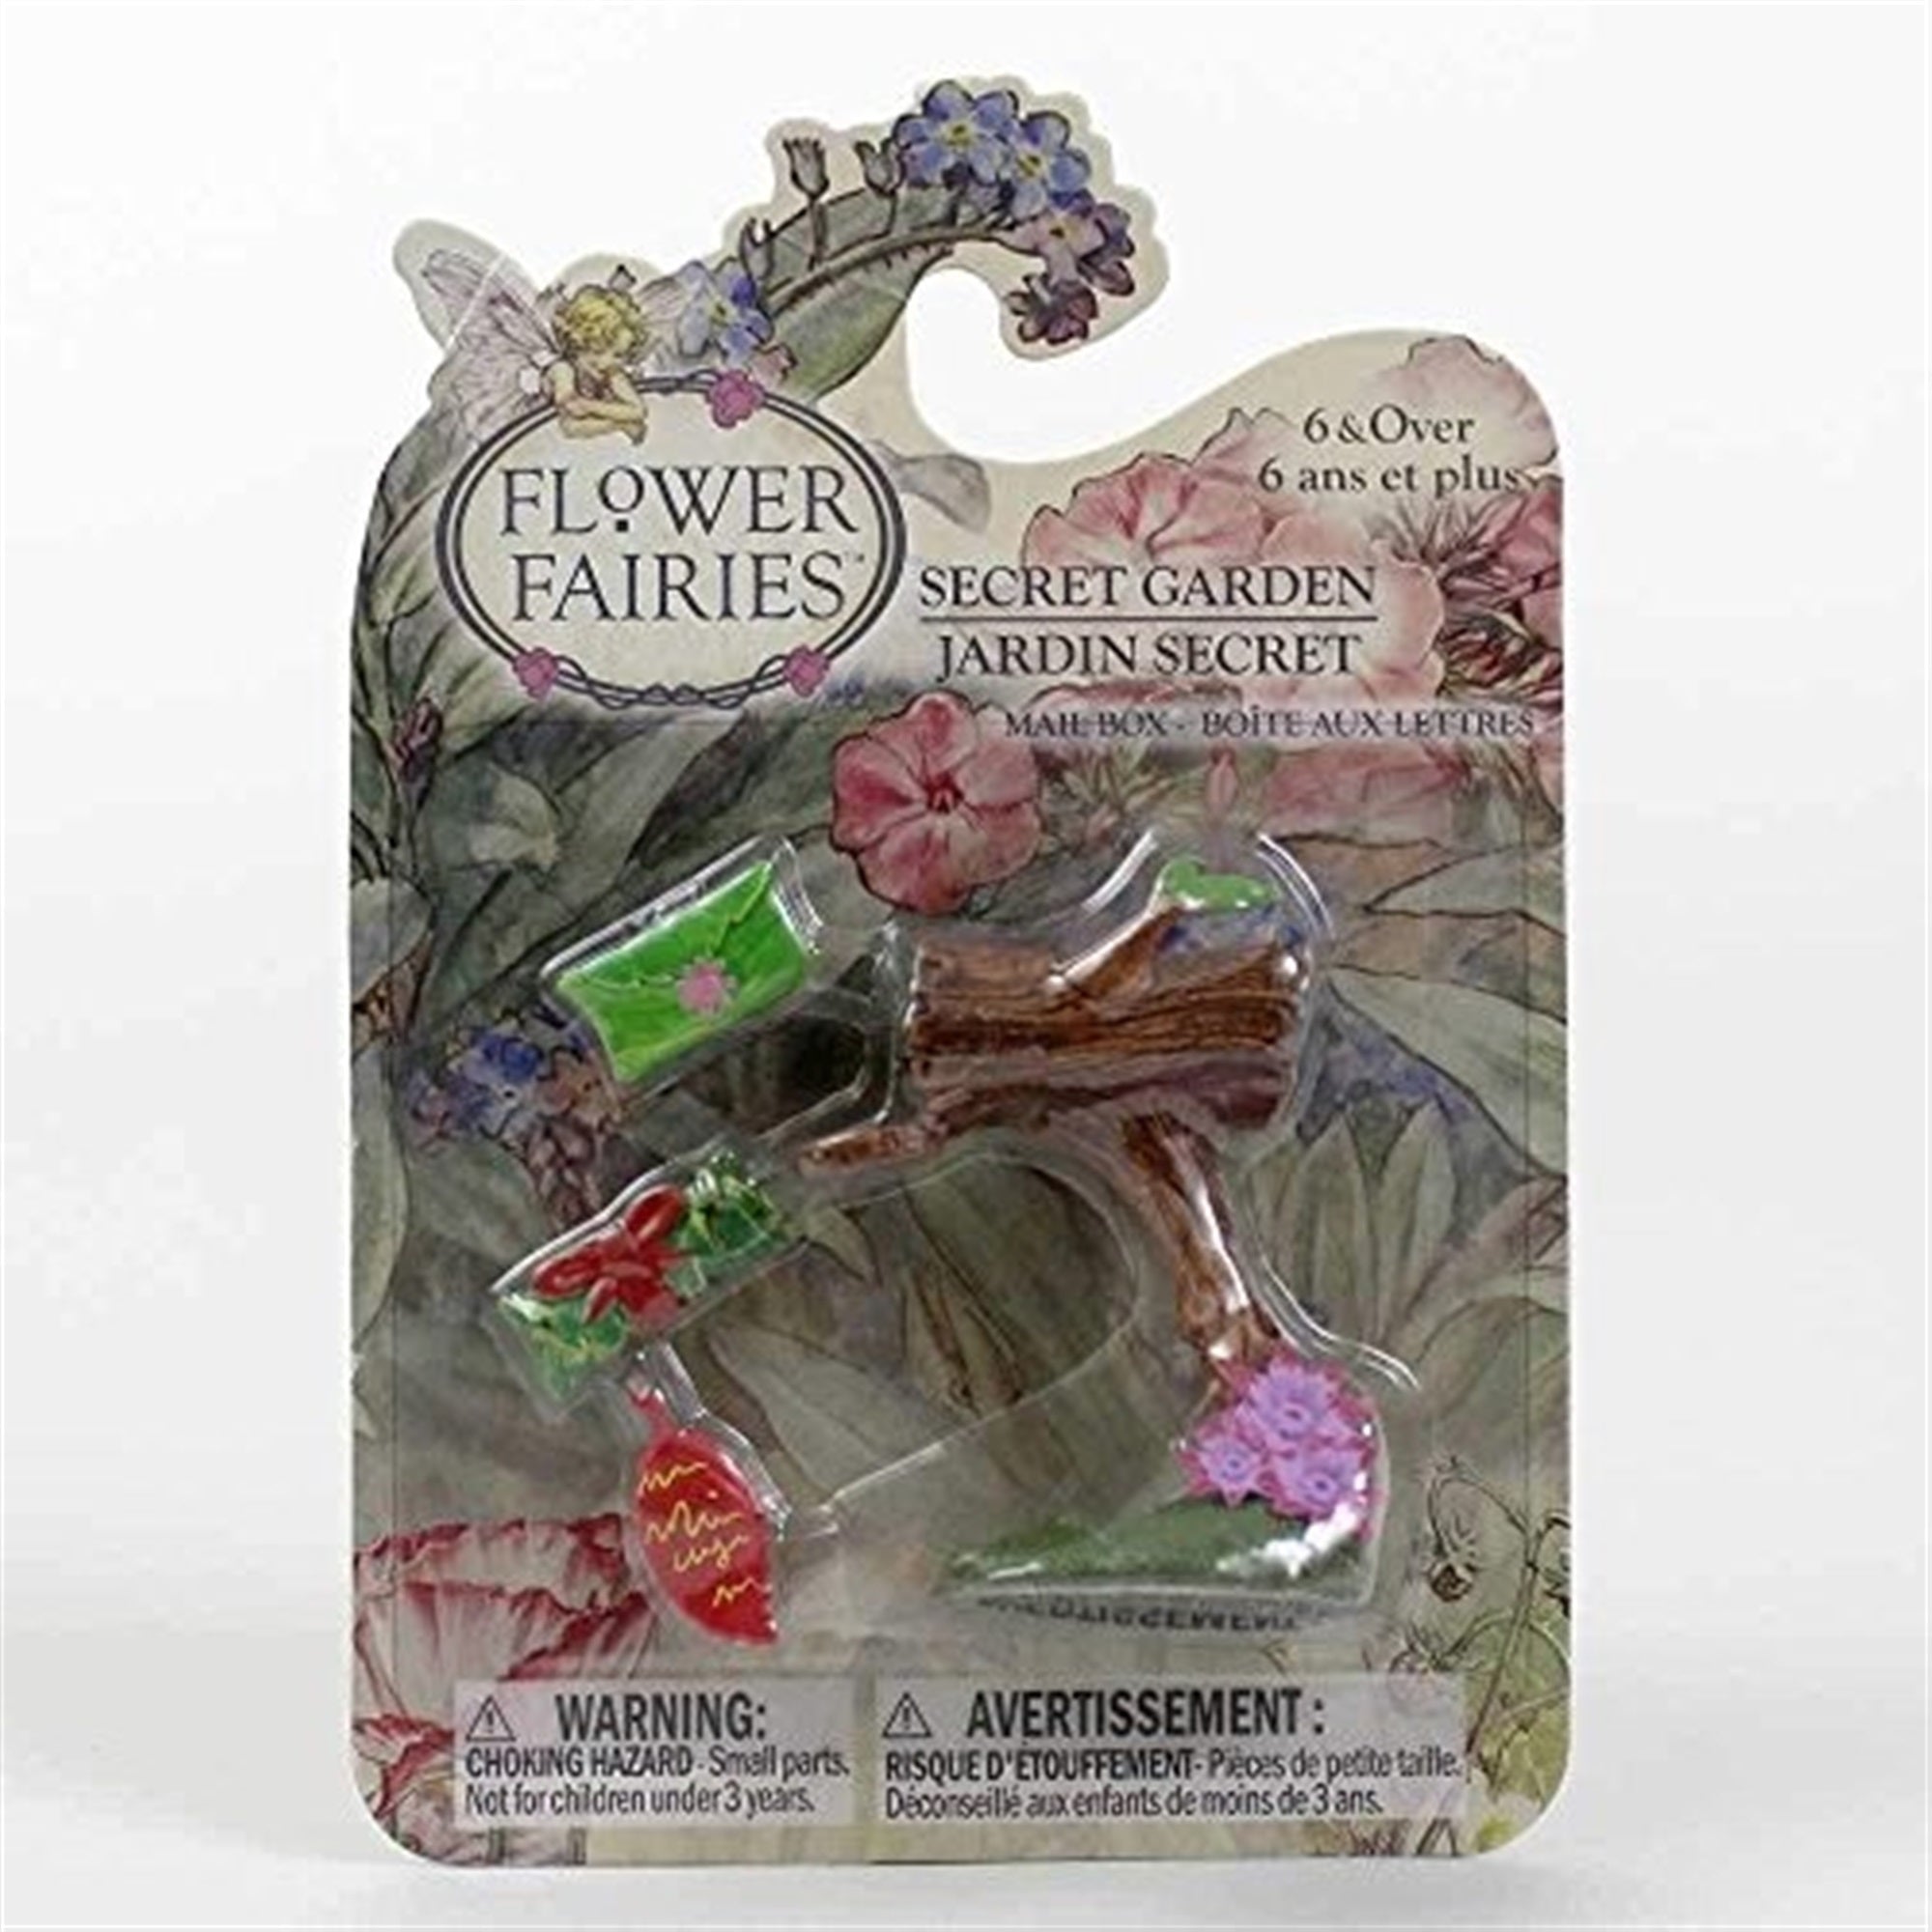 Flower Fairies Secret Garden Accessories, Mailbox